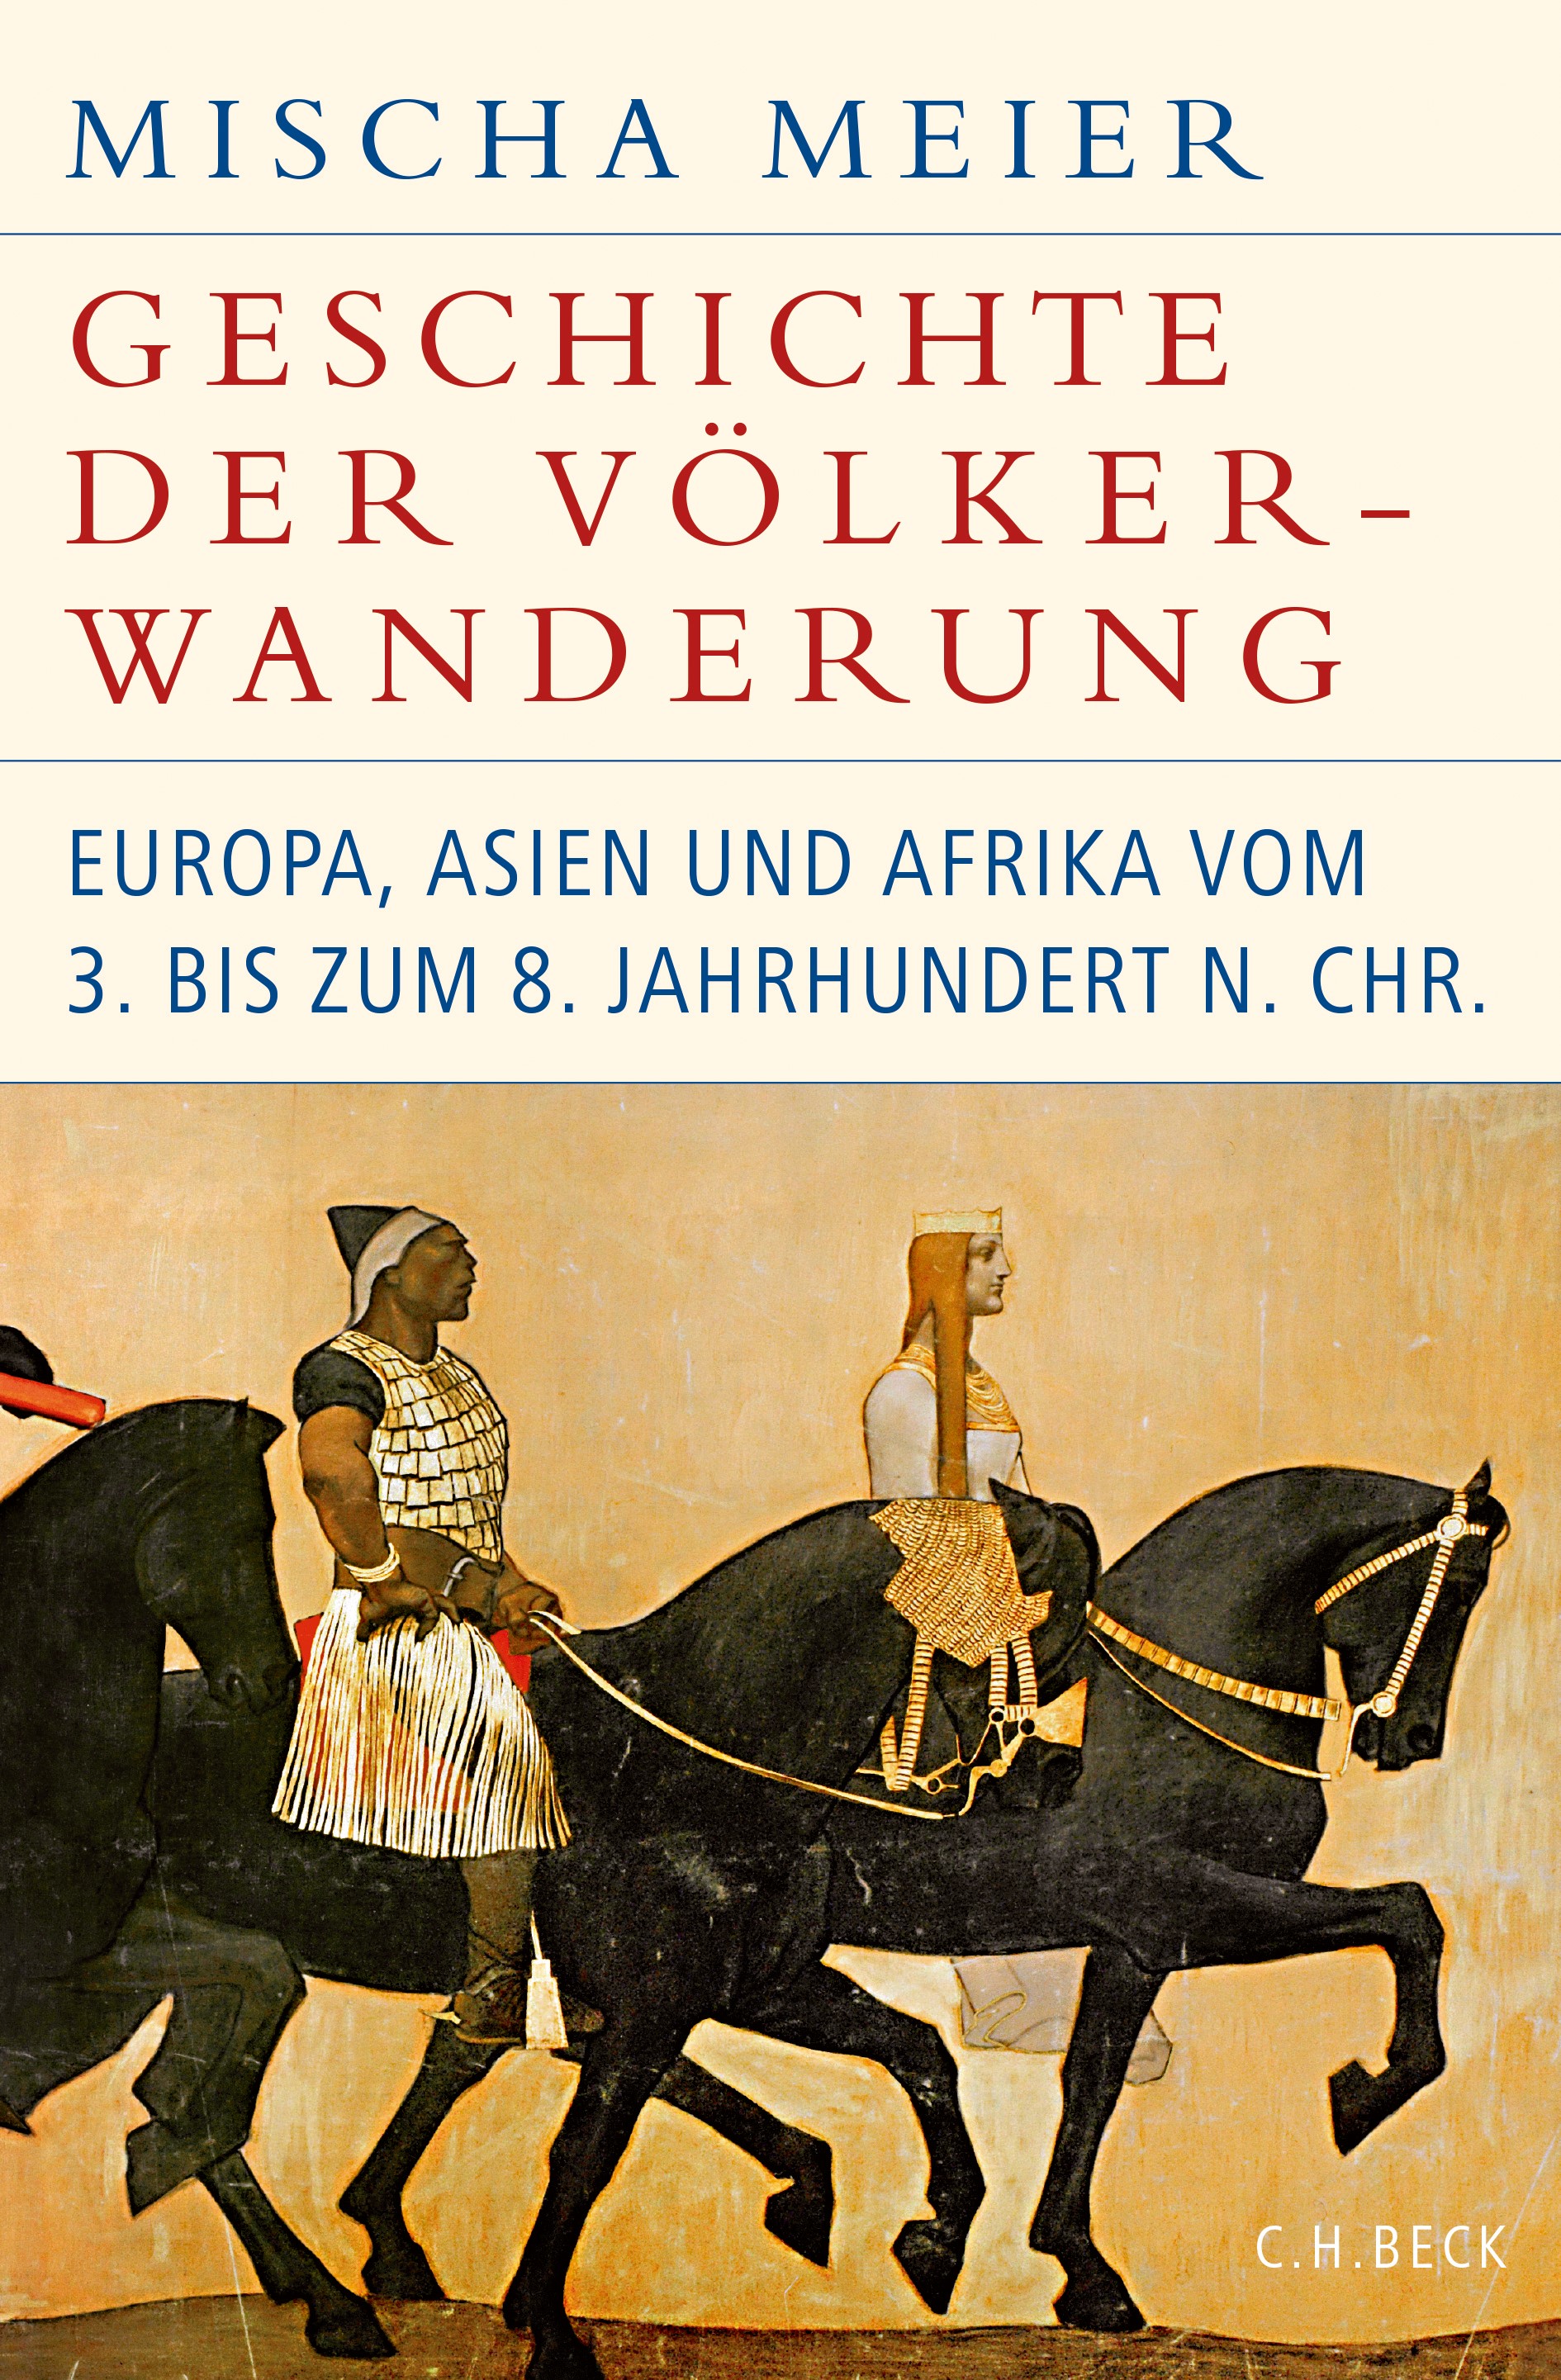 Mischa Meier: Geschichte der Völkerwanderung (German language, 2020, C.H.Beck)